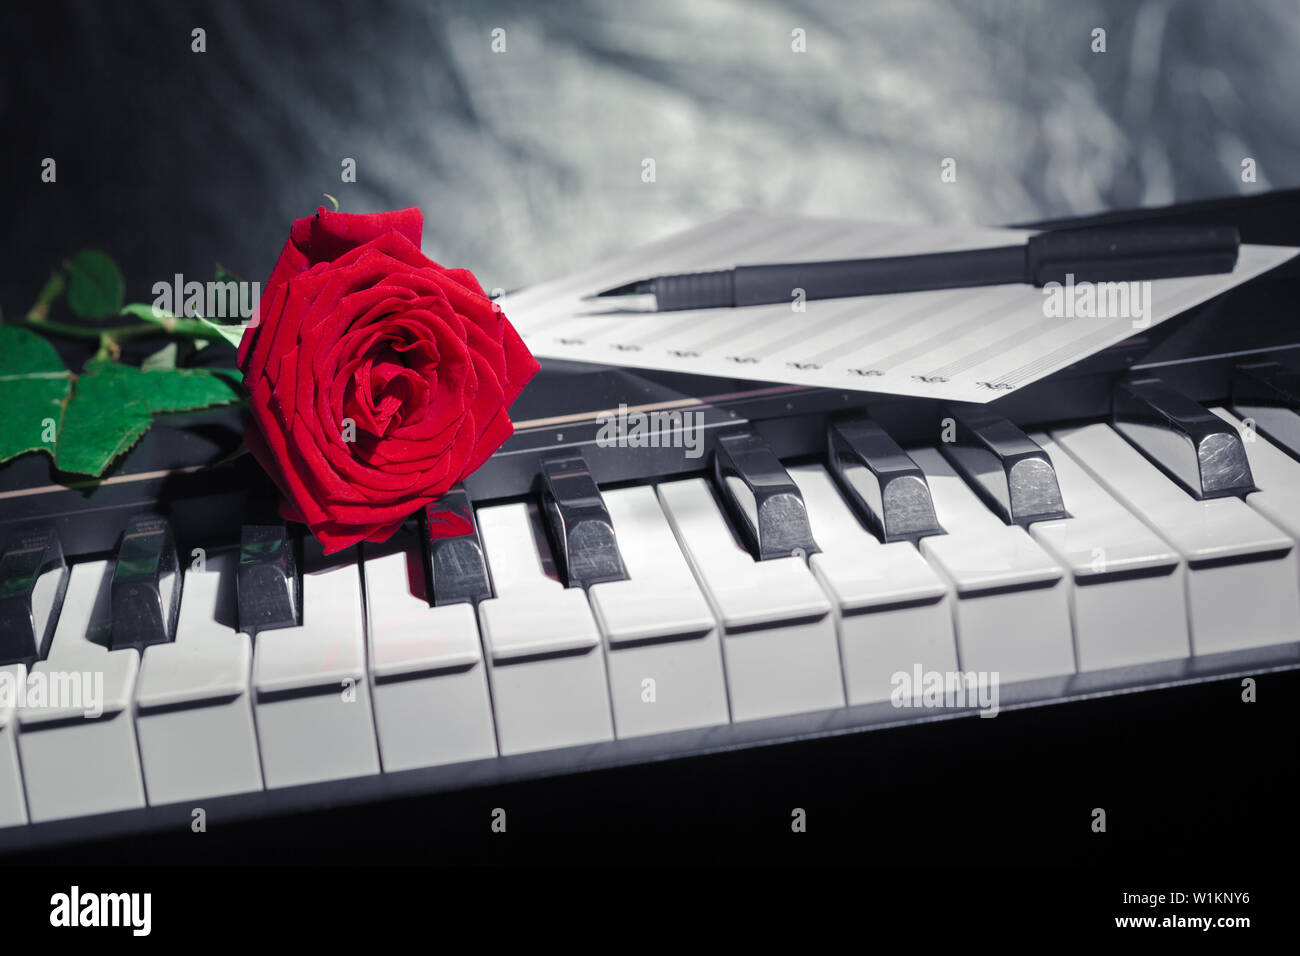 На клавишах тургенева. Клавиши фортепиано. Цветы на клавишах пианино.